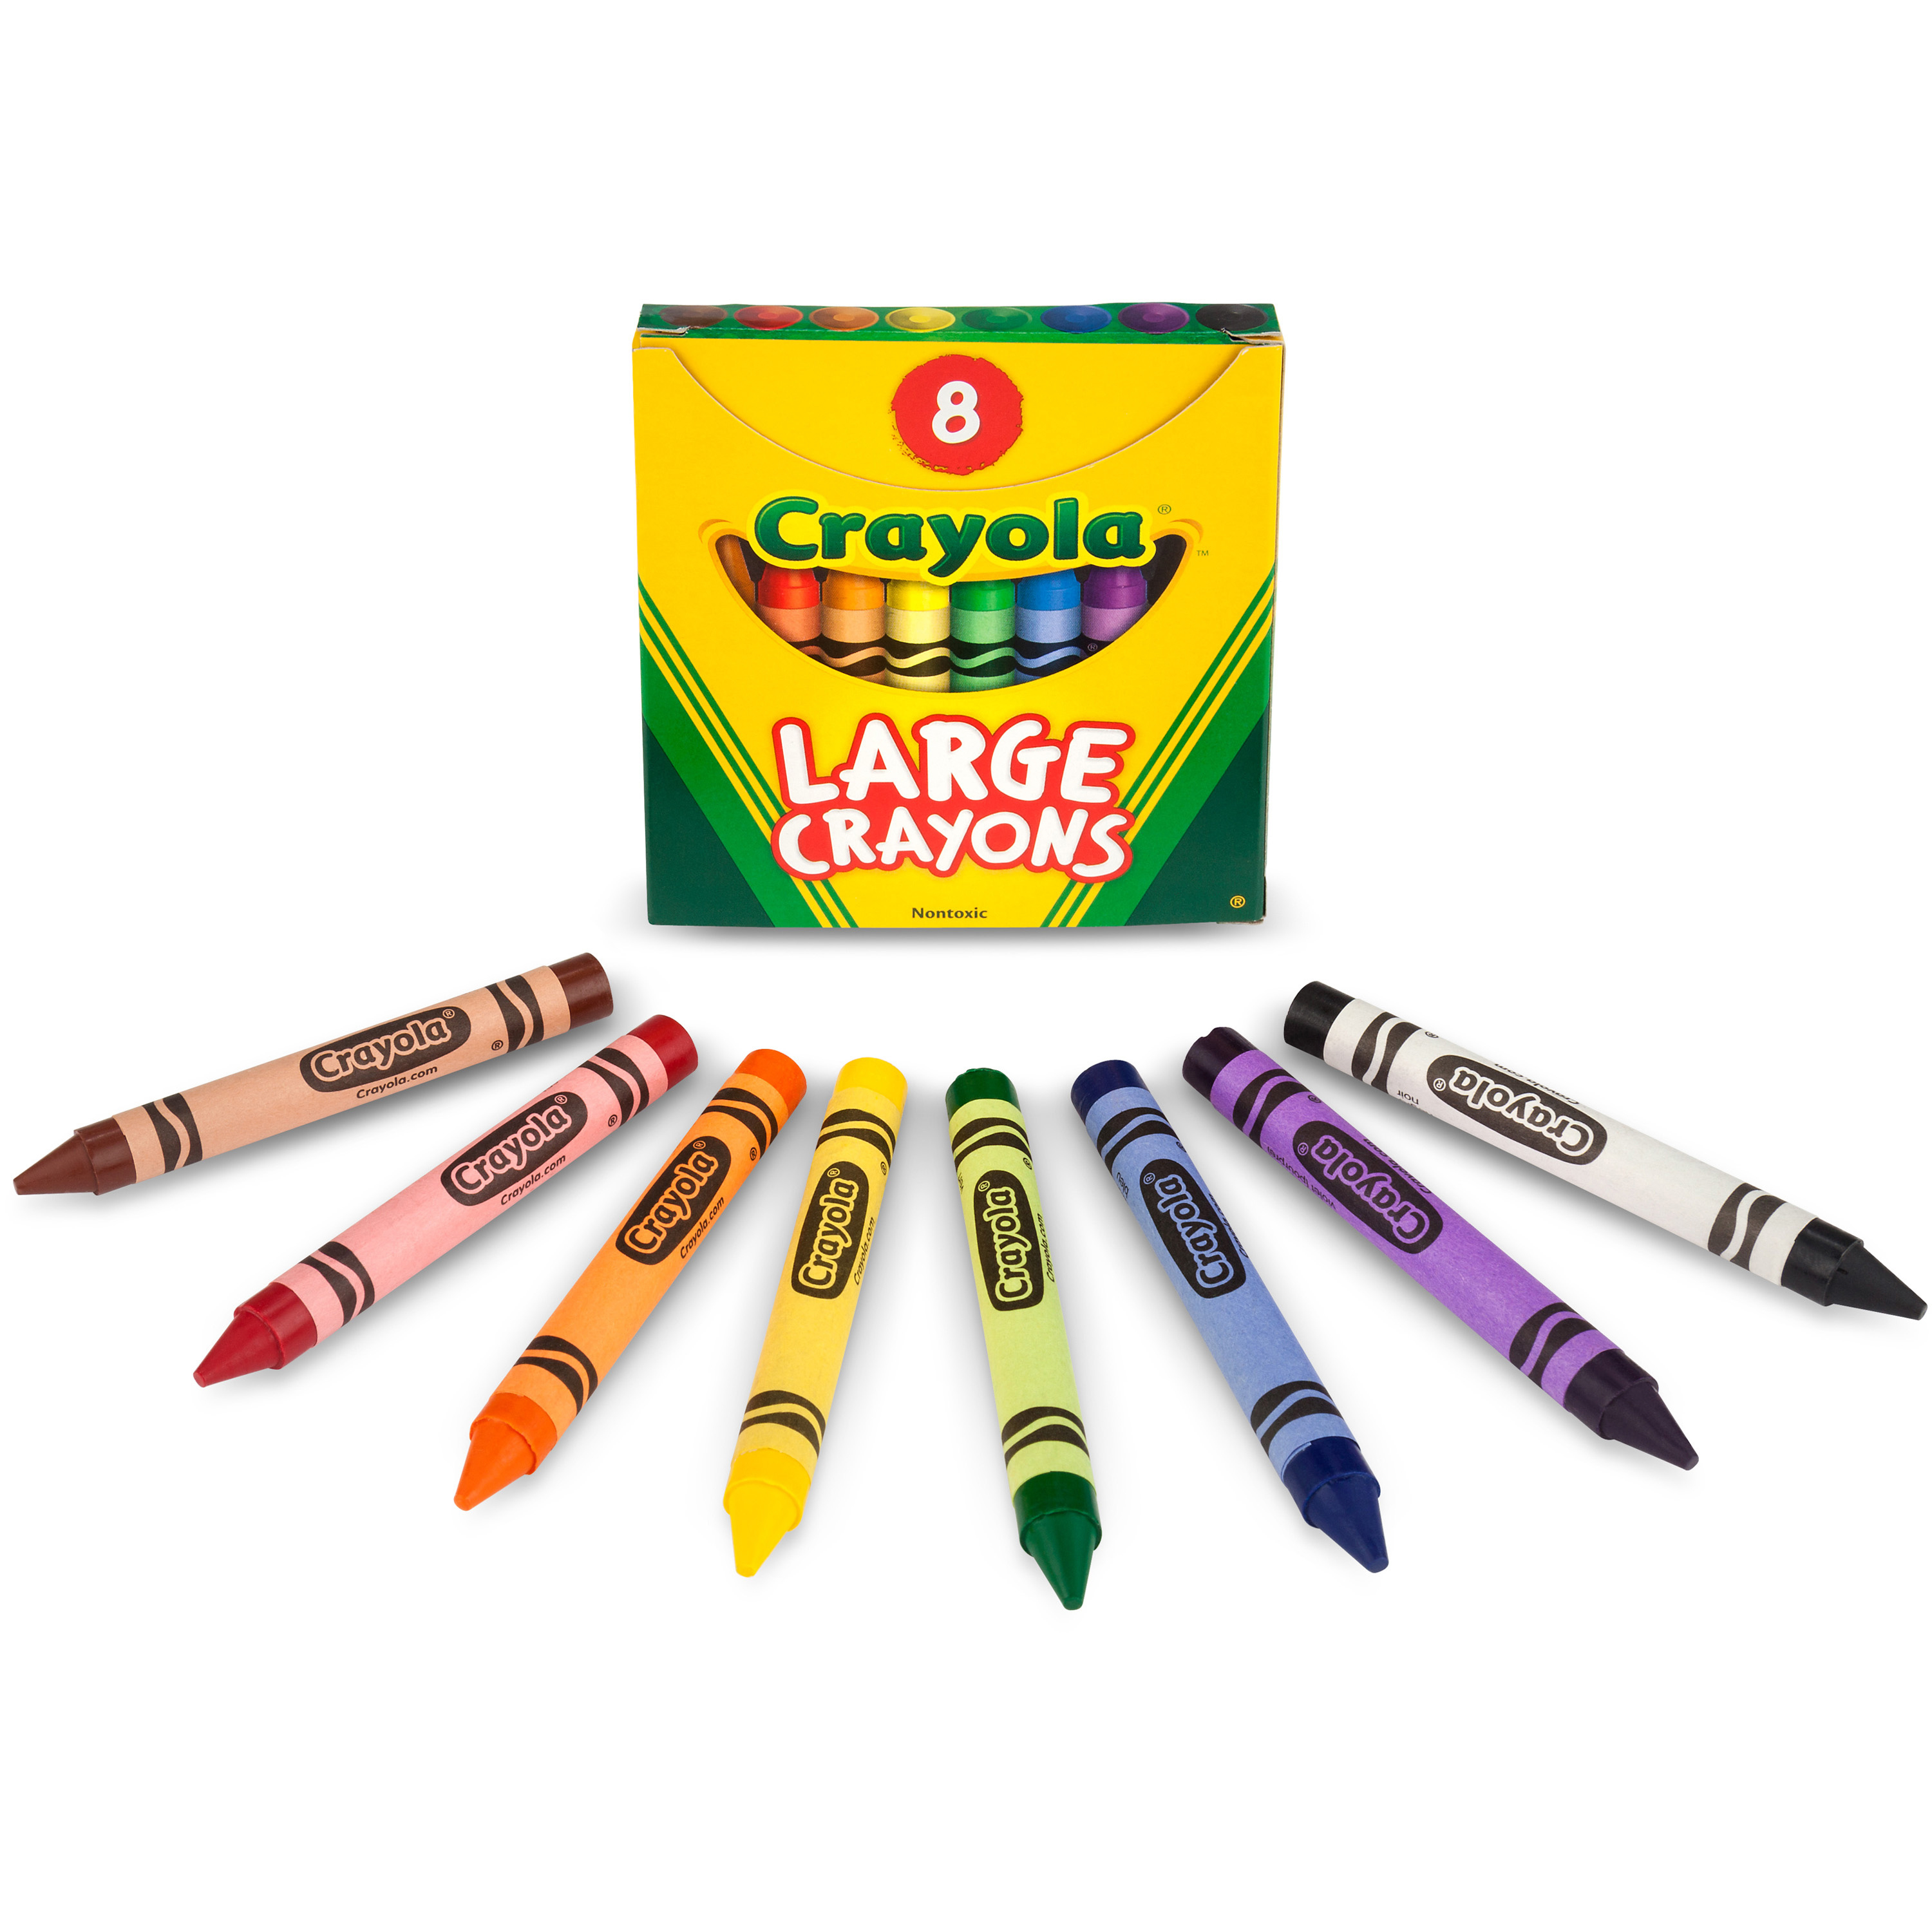 Large Crayon Classpack, 400 Count Bulk Crayons, Crayola.com